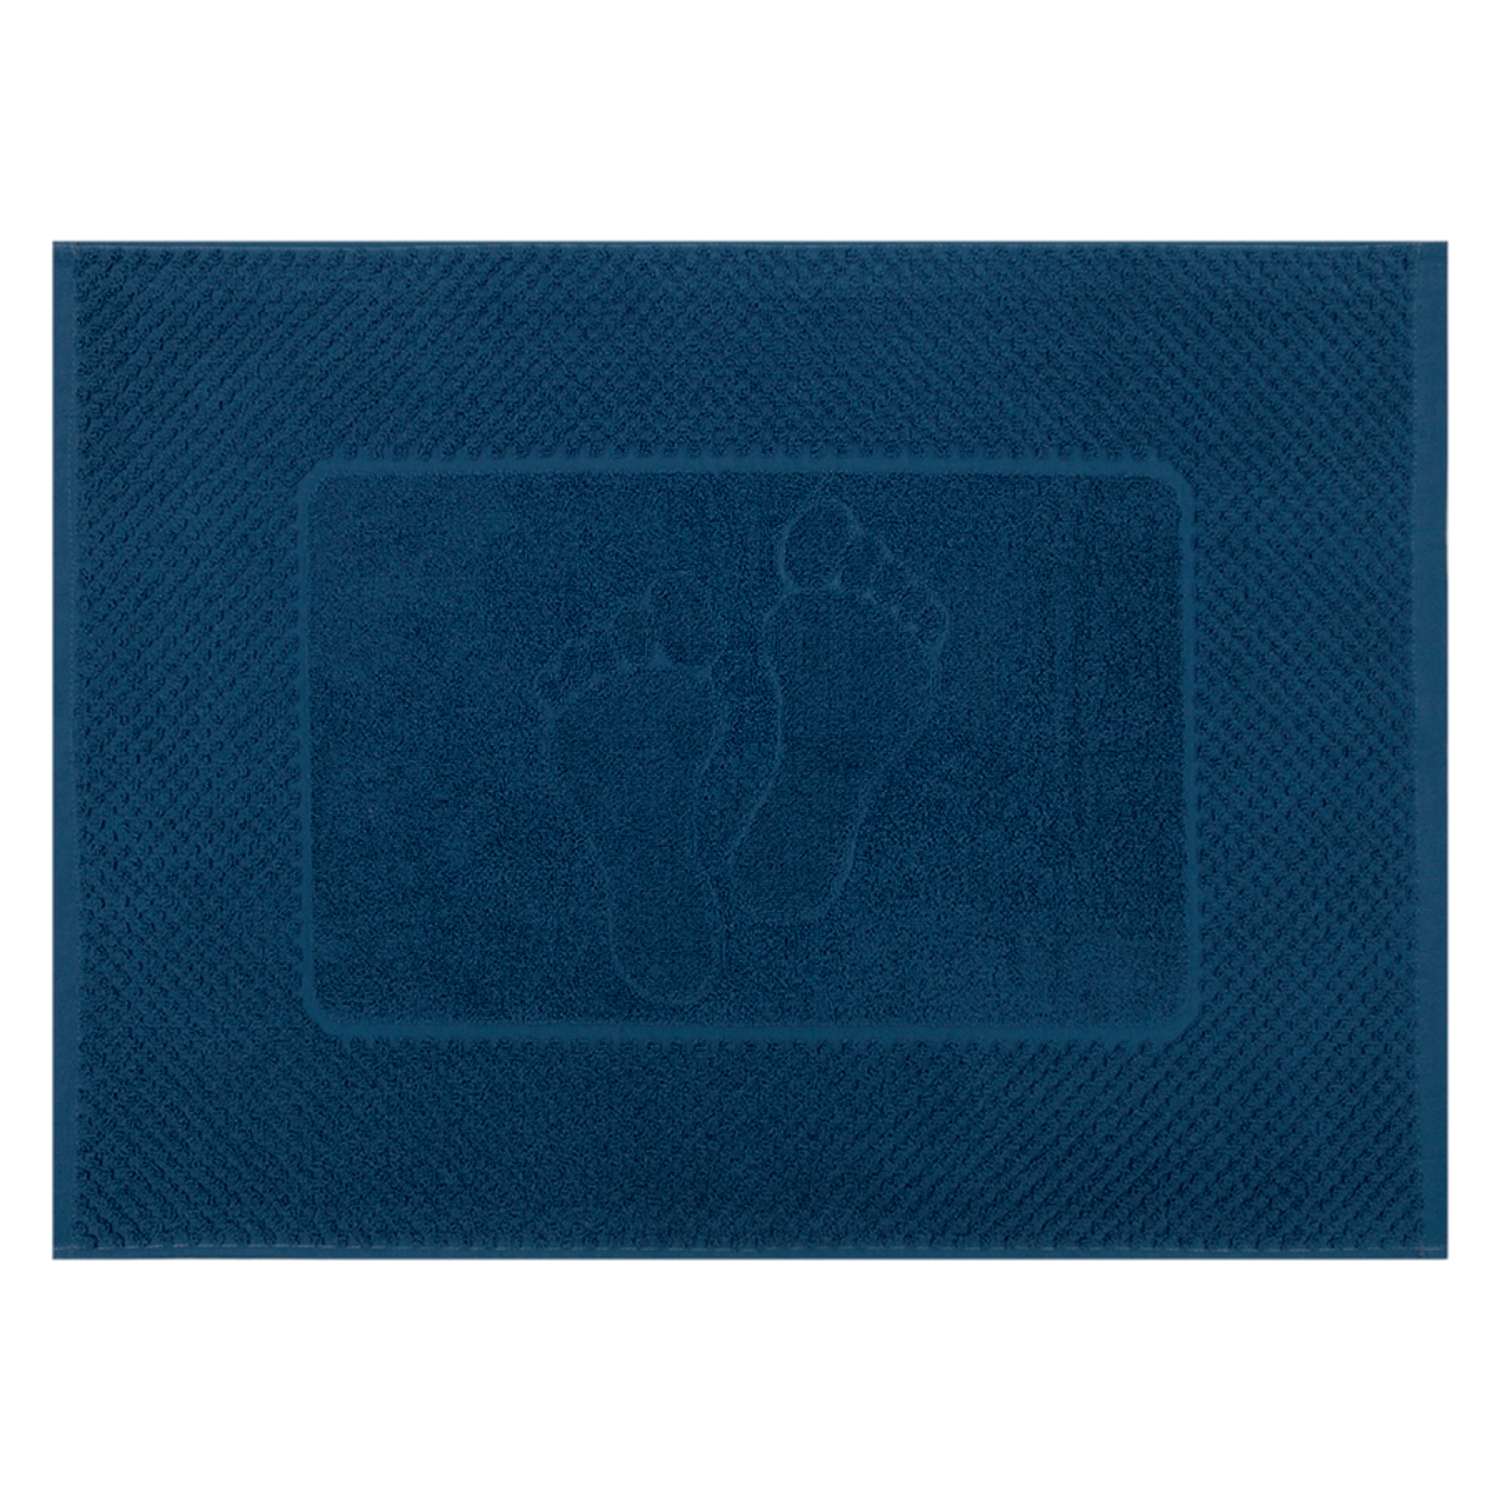 Махровое полотенце-коврик Bravo м7725_01 50х70 синий - фото 1